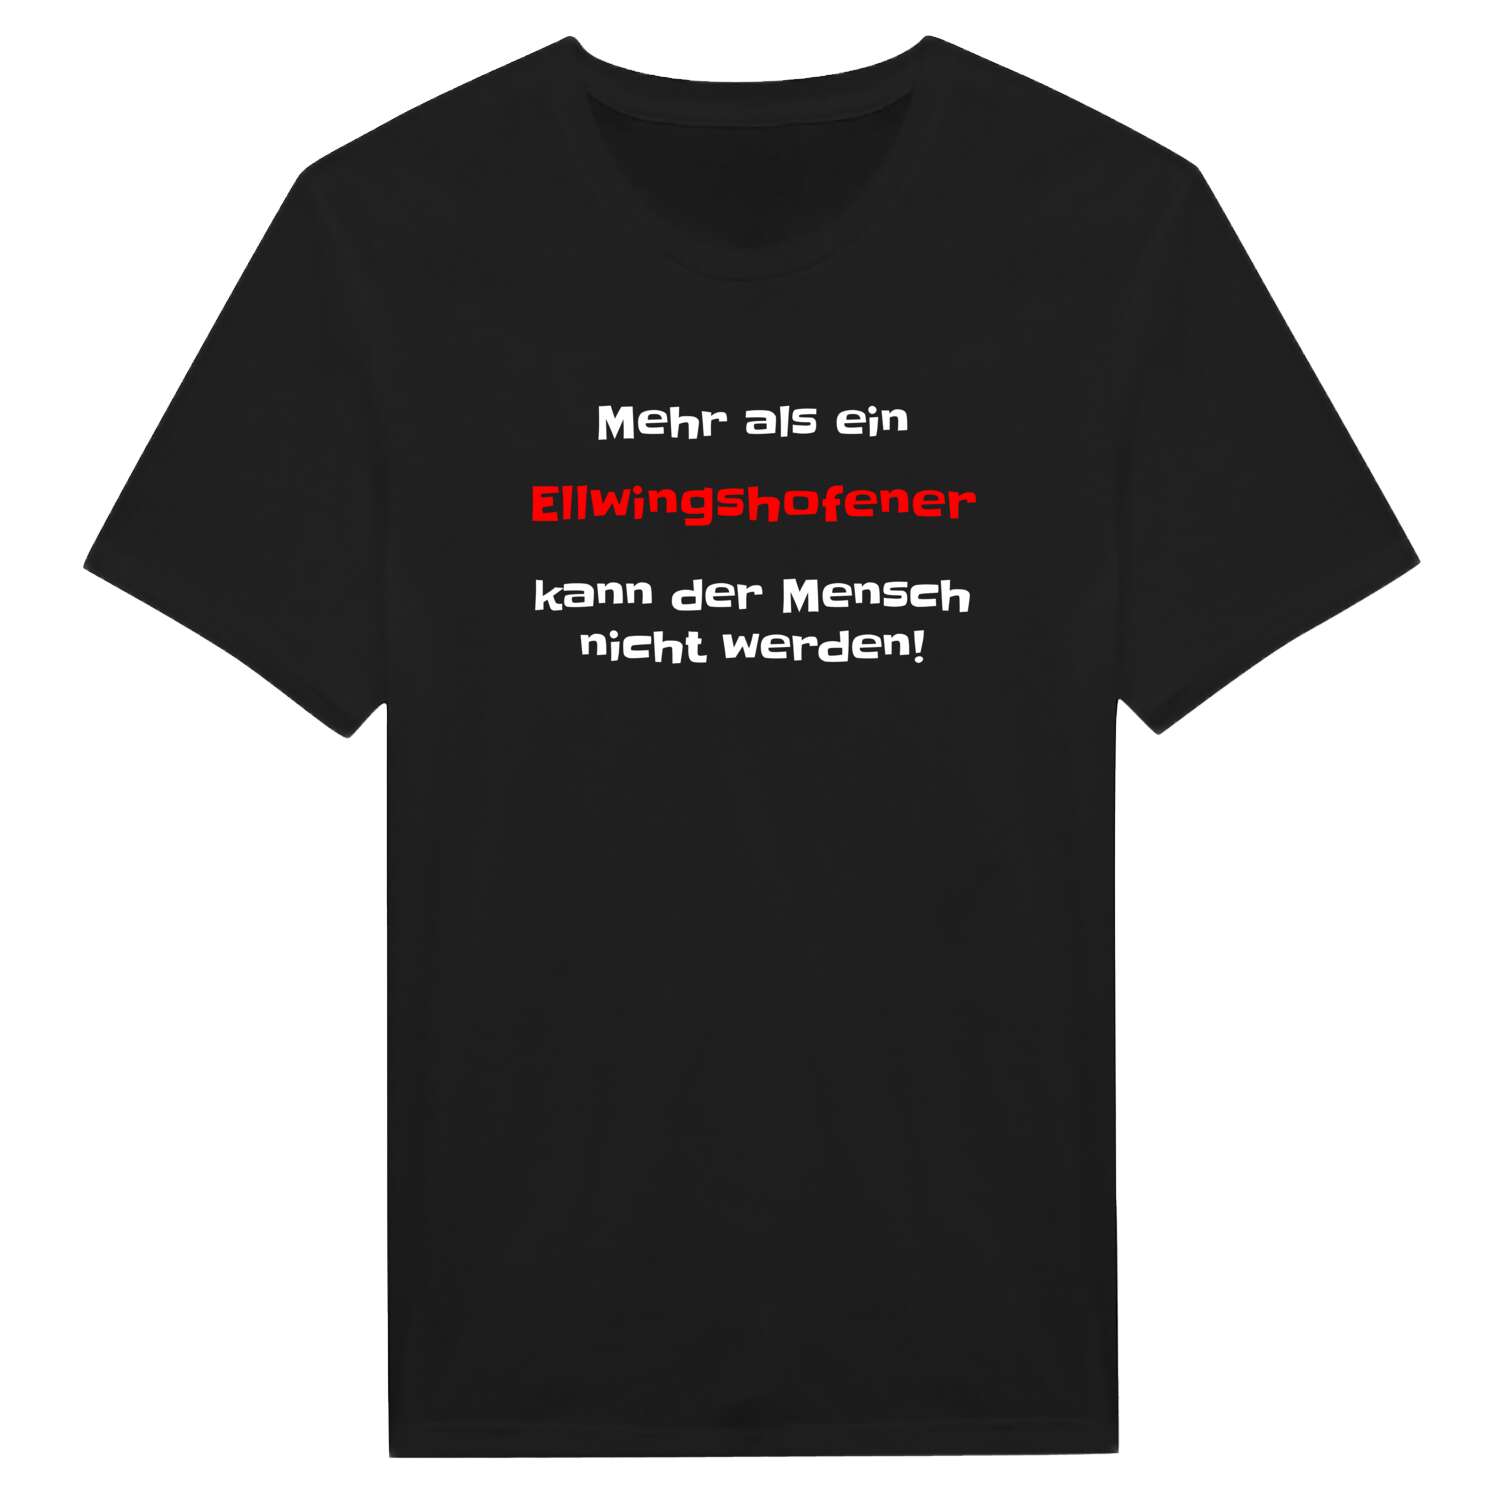 Ellwingshofen T-Shirt »Mehr als ein«